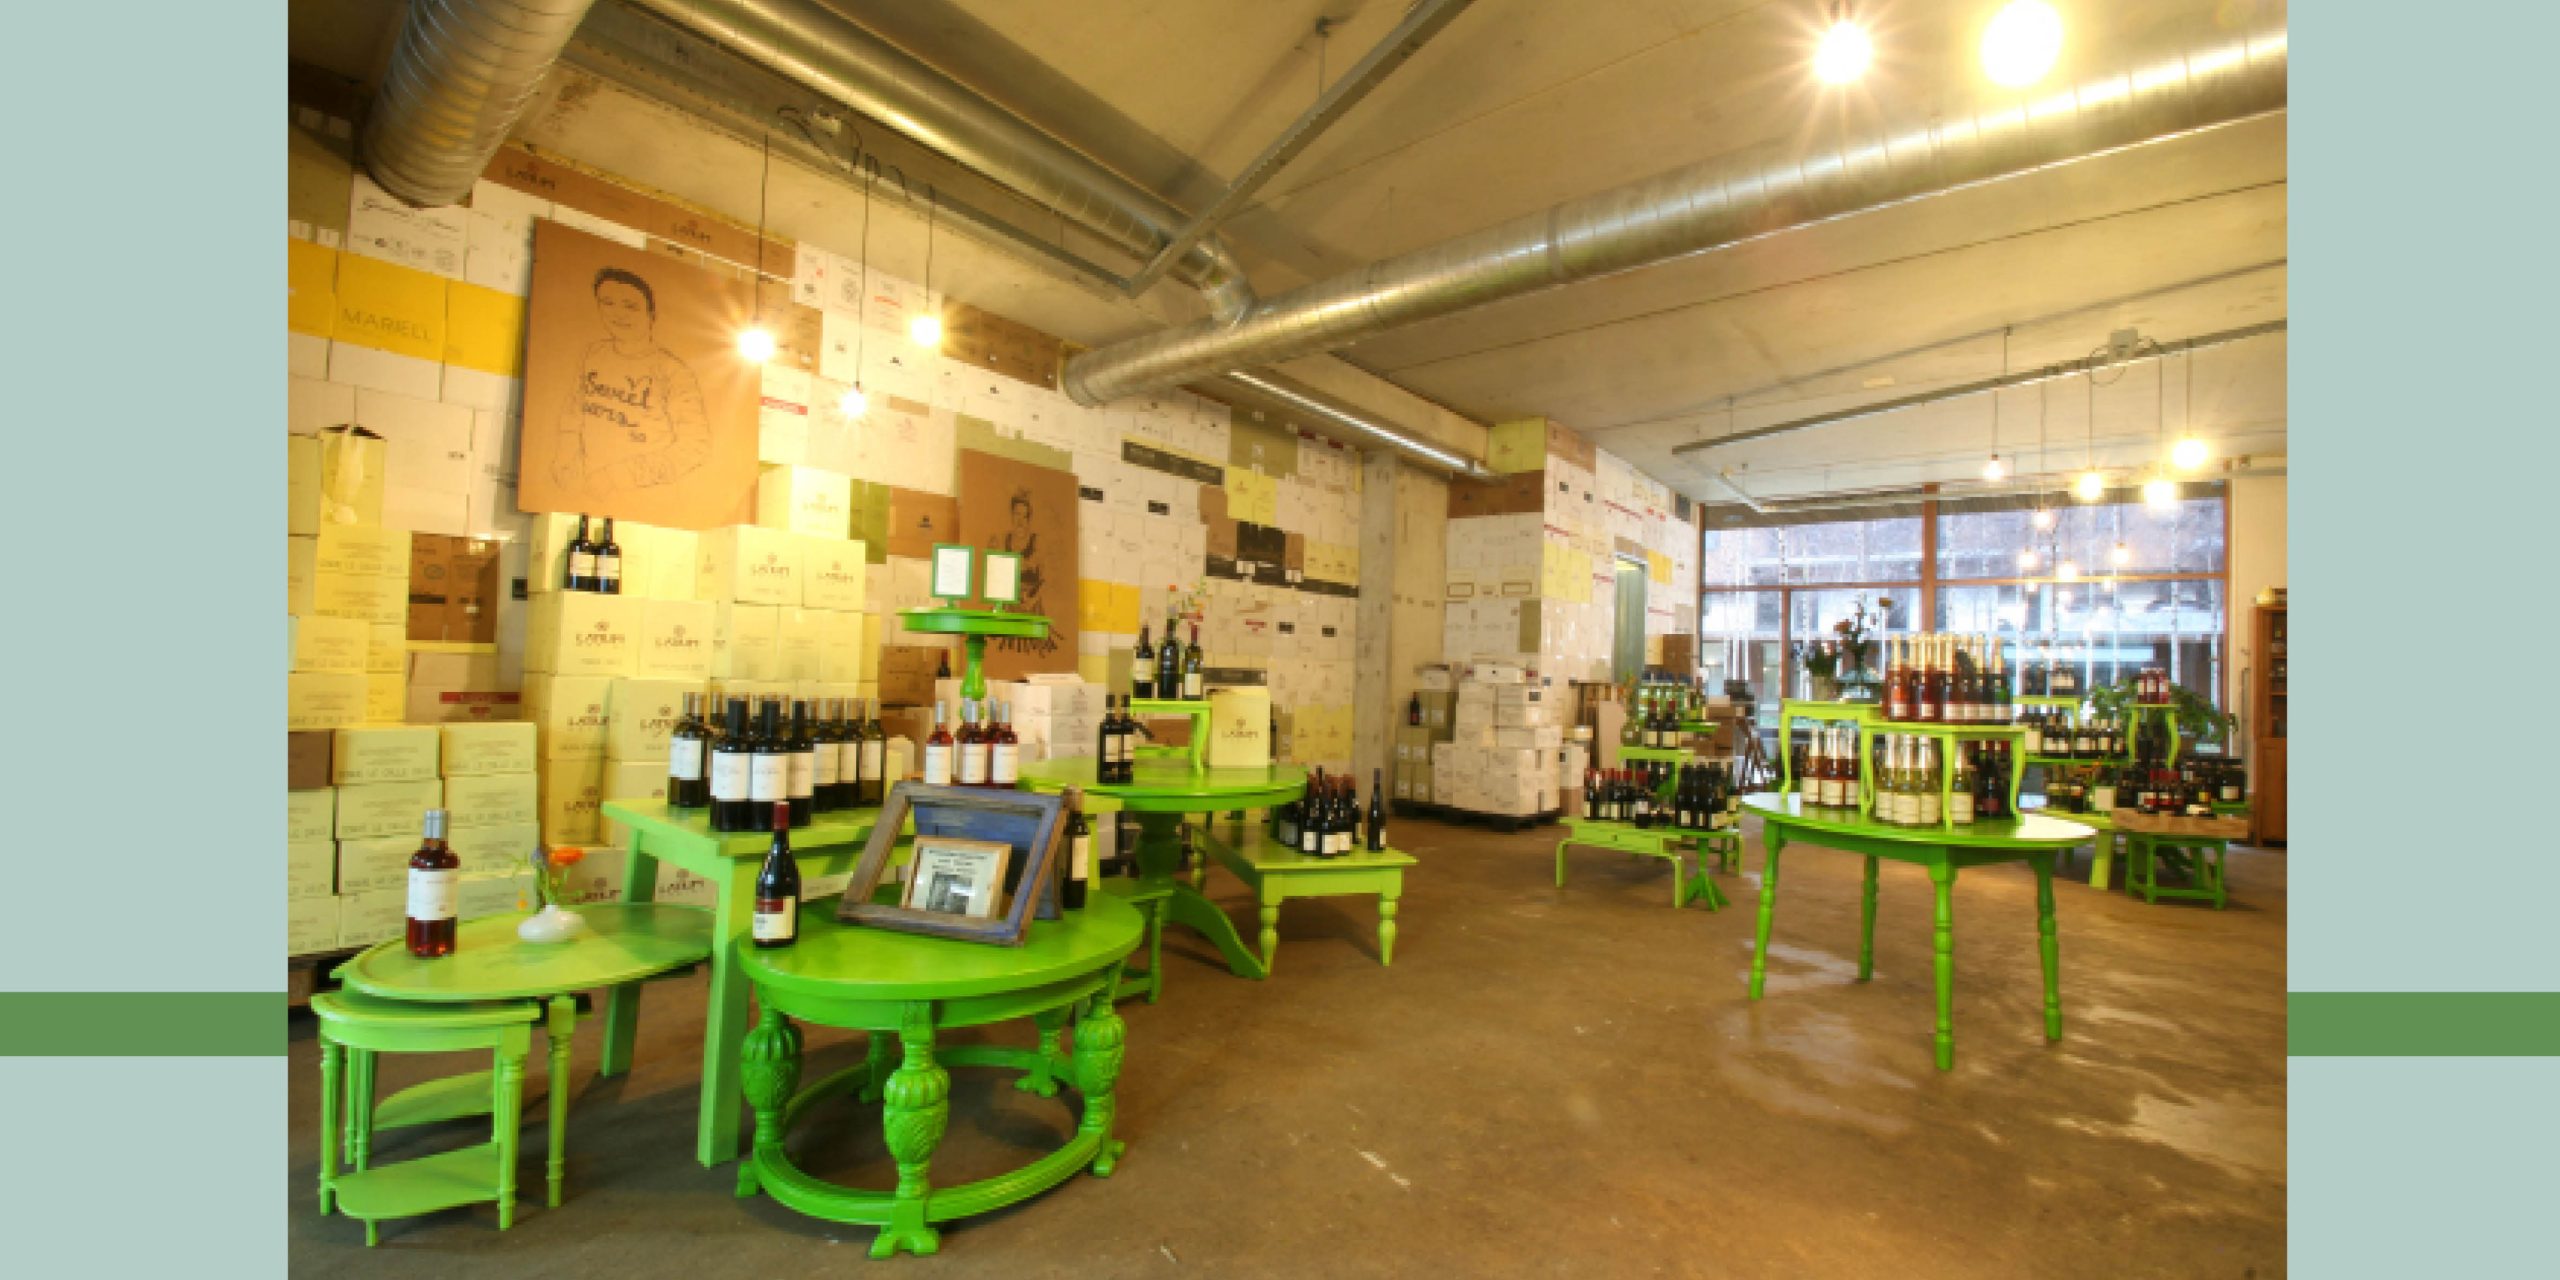 Interieur wijnwinkel Rotterdam